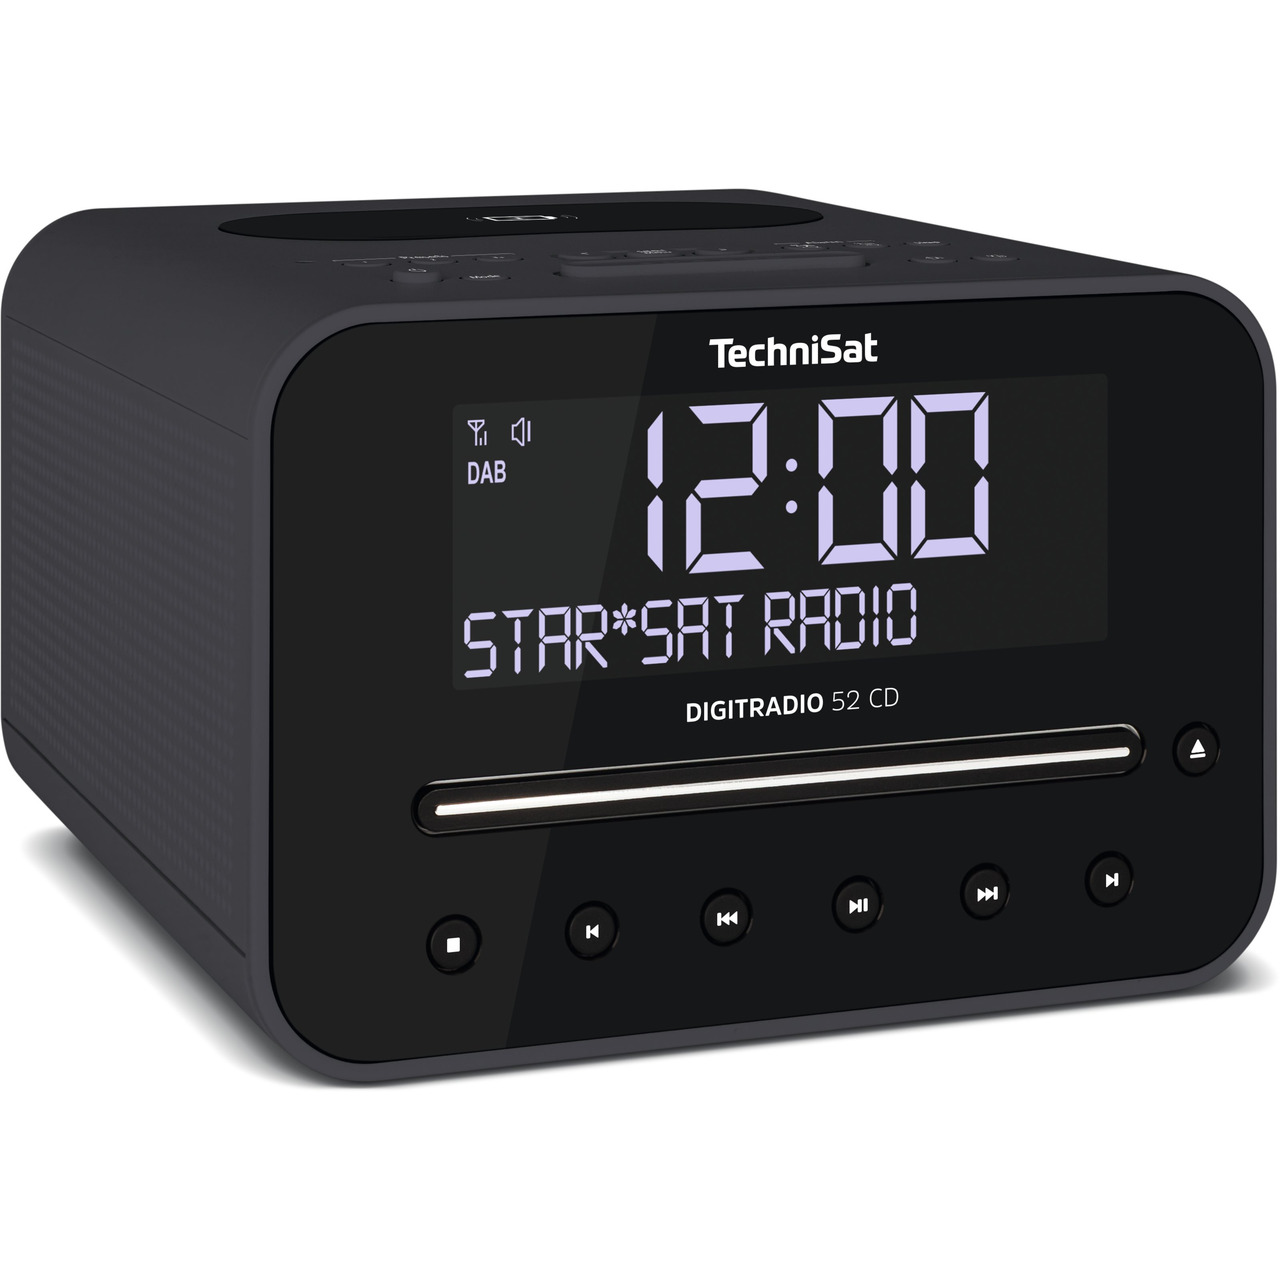 TechniSat DigitRadio 52 CD- mit DAB+-UKW-Empfang- CD-Player und Bluetooth-Funktion- schwarz